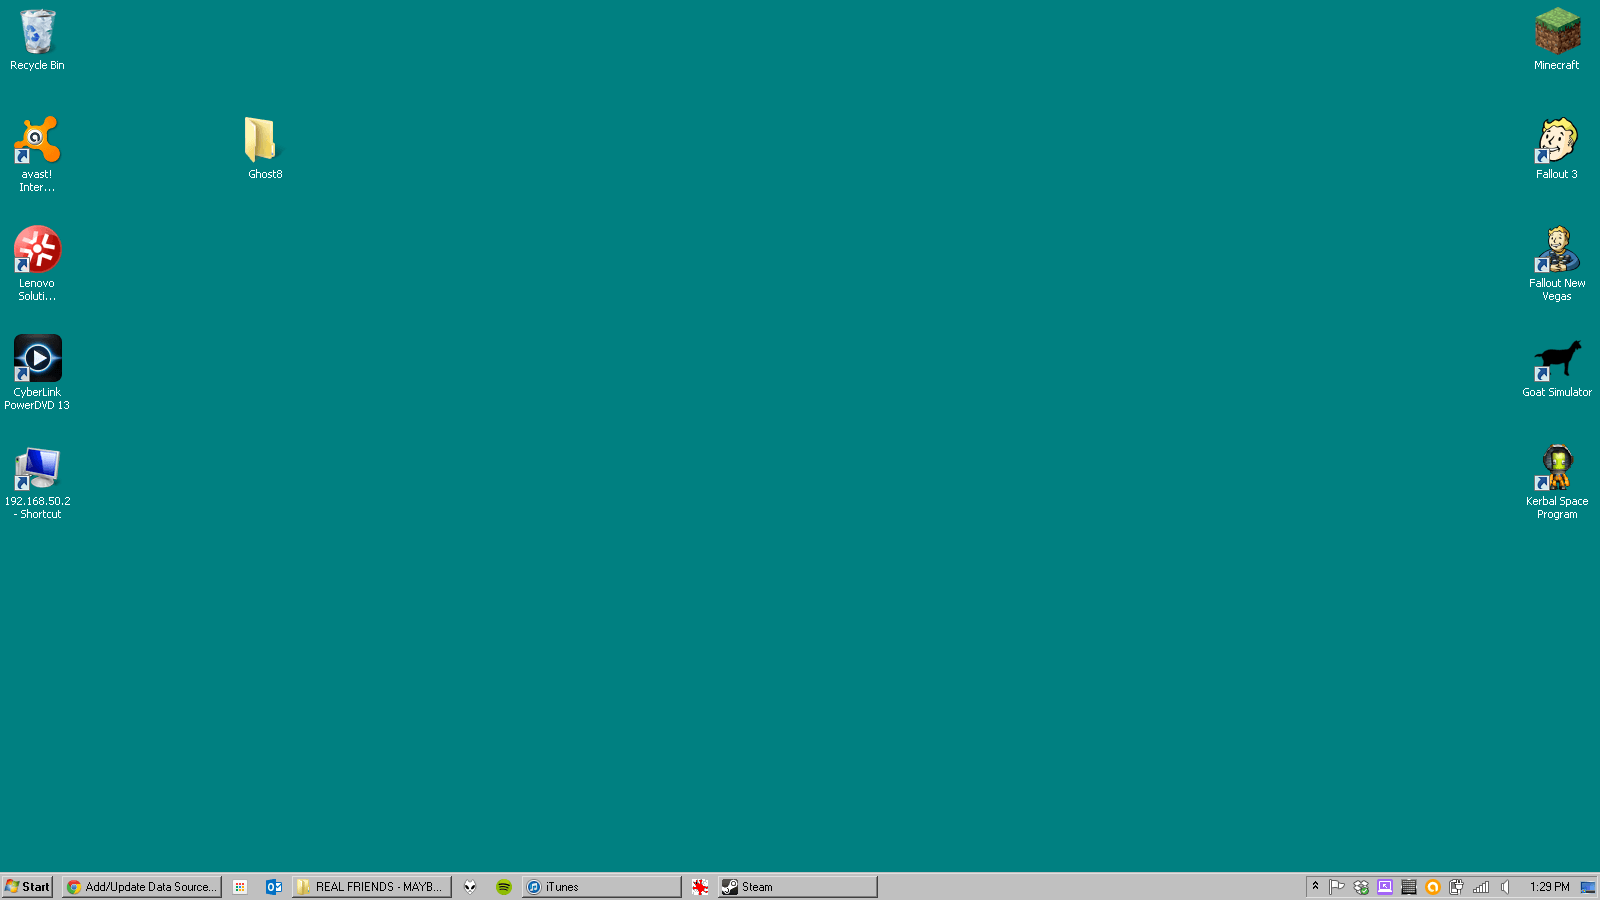 Nhấn vào đây để tìm hiểu thêm về hình nền mặc định của Windows 98 trên WallpaperDog. Ảnh nền mặc định này sẽ mang đến cho bạn sự bình yên, tĩnh lặng cùng với cảm giác hân hoan và phấn khích khi sử dụng máy tính.